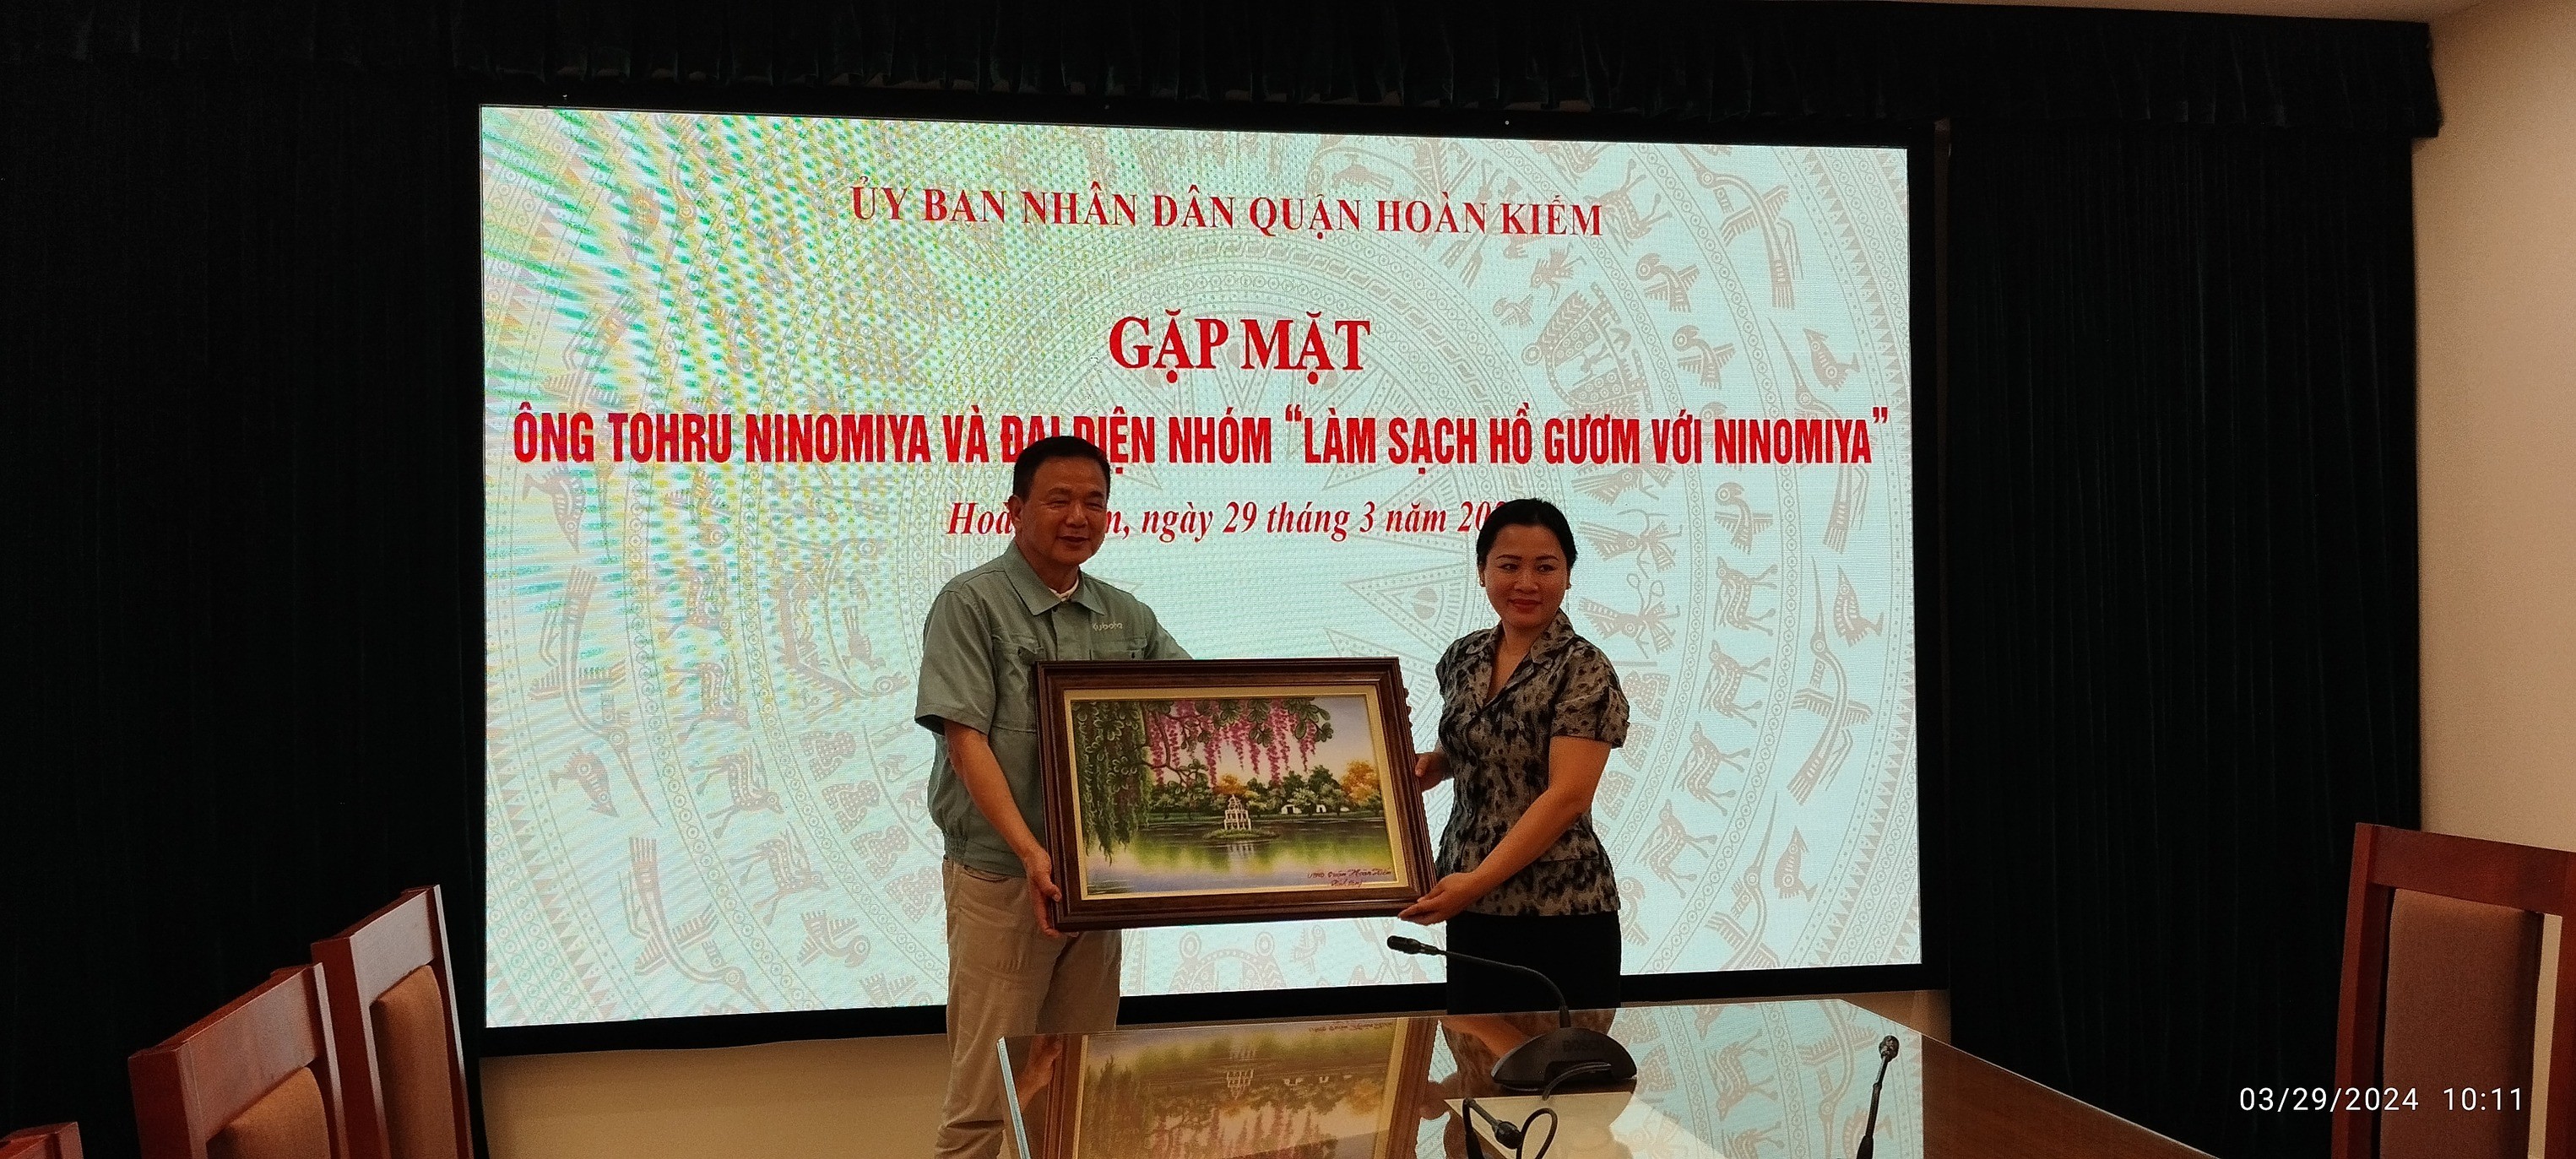 Phó Chủ tịch UBND quận Hoàn Kiếm Lê Anh Thư tặng quà lưu niệm cho ông Ninomiya. (Ảnh: FB Phuong Nguyen)